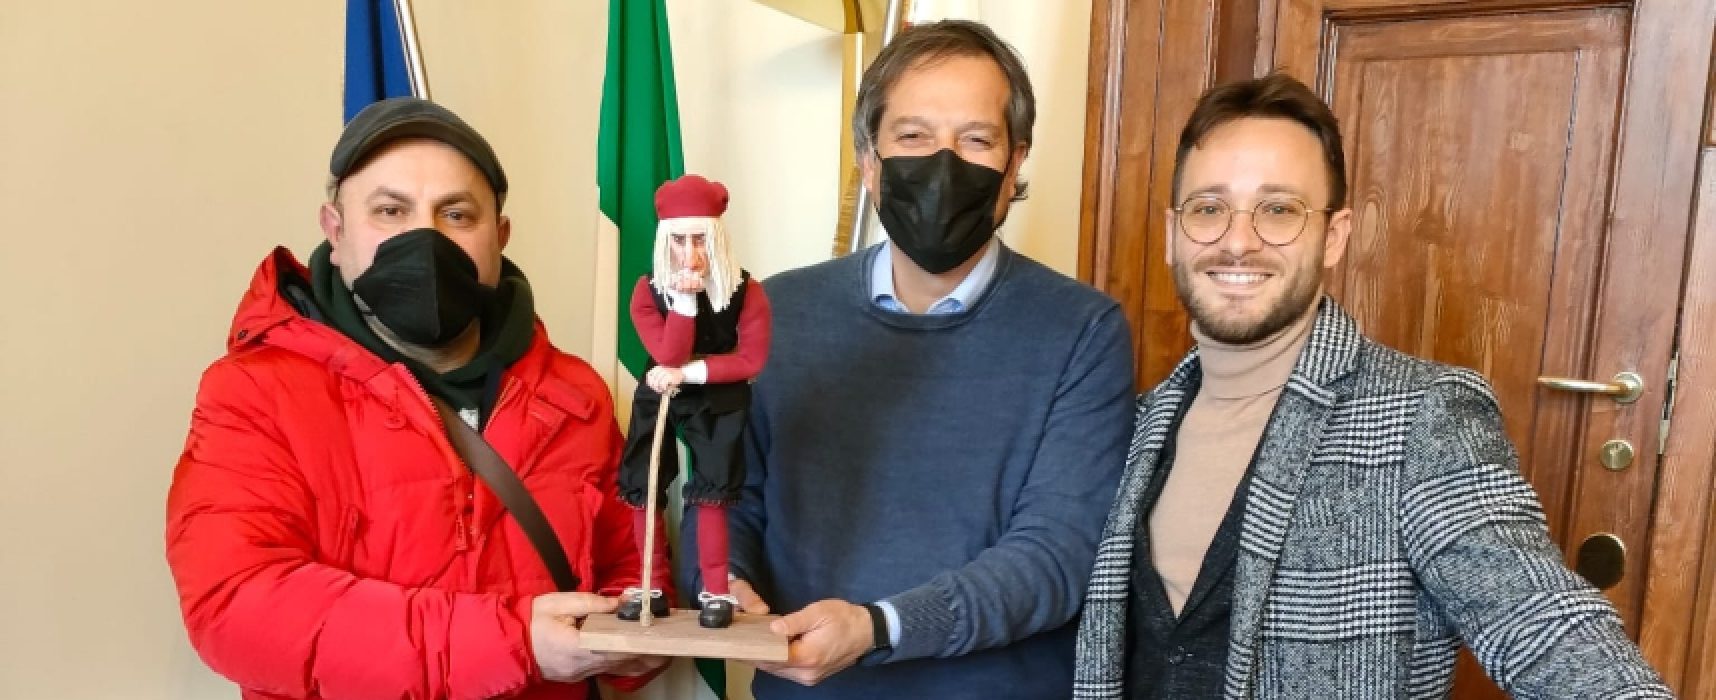 Don Pancrazio accolto dal sindaco Angarano, termina il tour di Vito “U Chiazzéire”